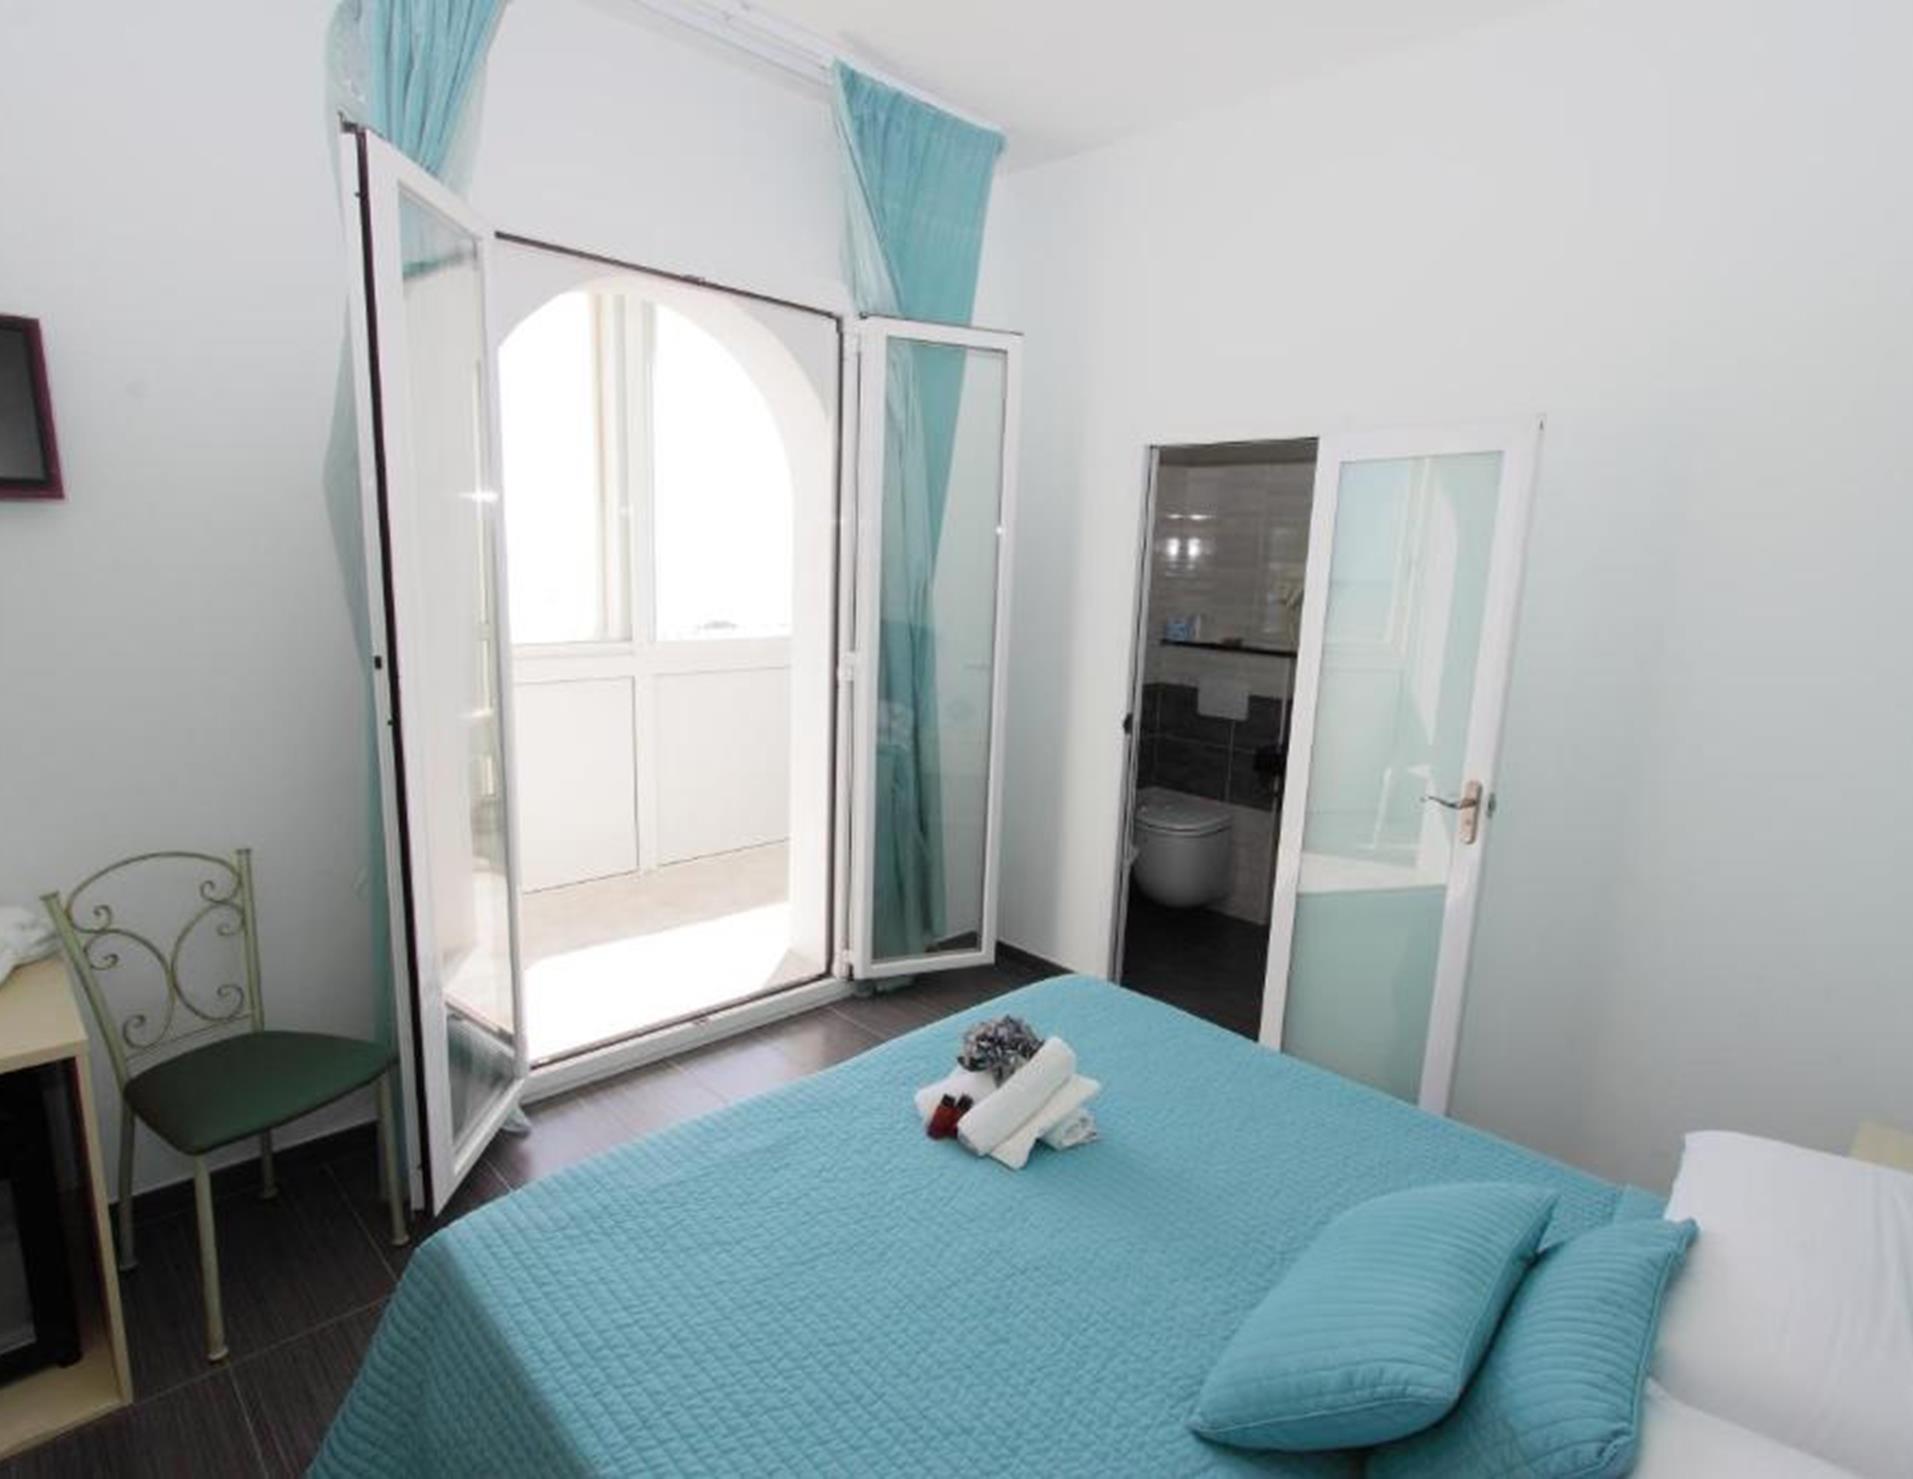 Hotel Spiaggia Marconi - Room 8